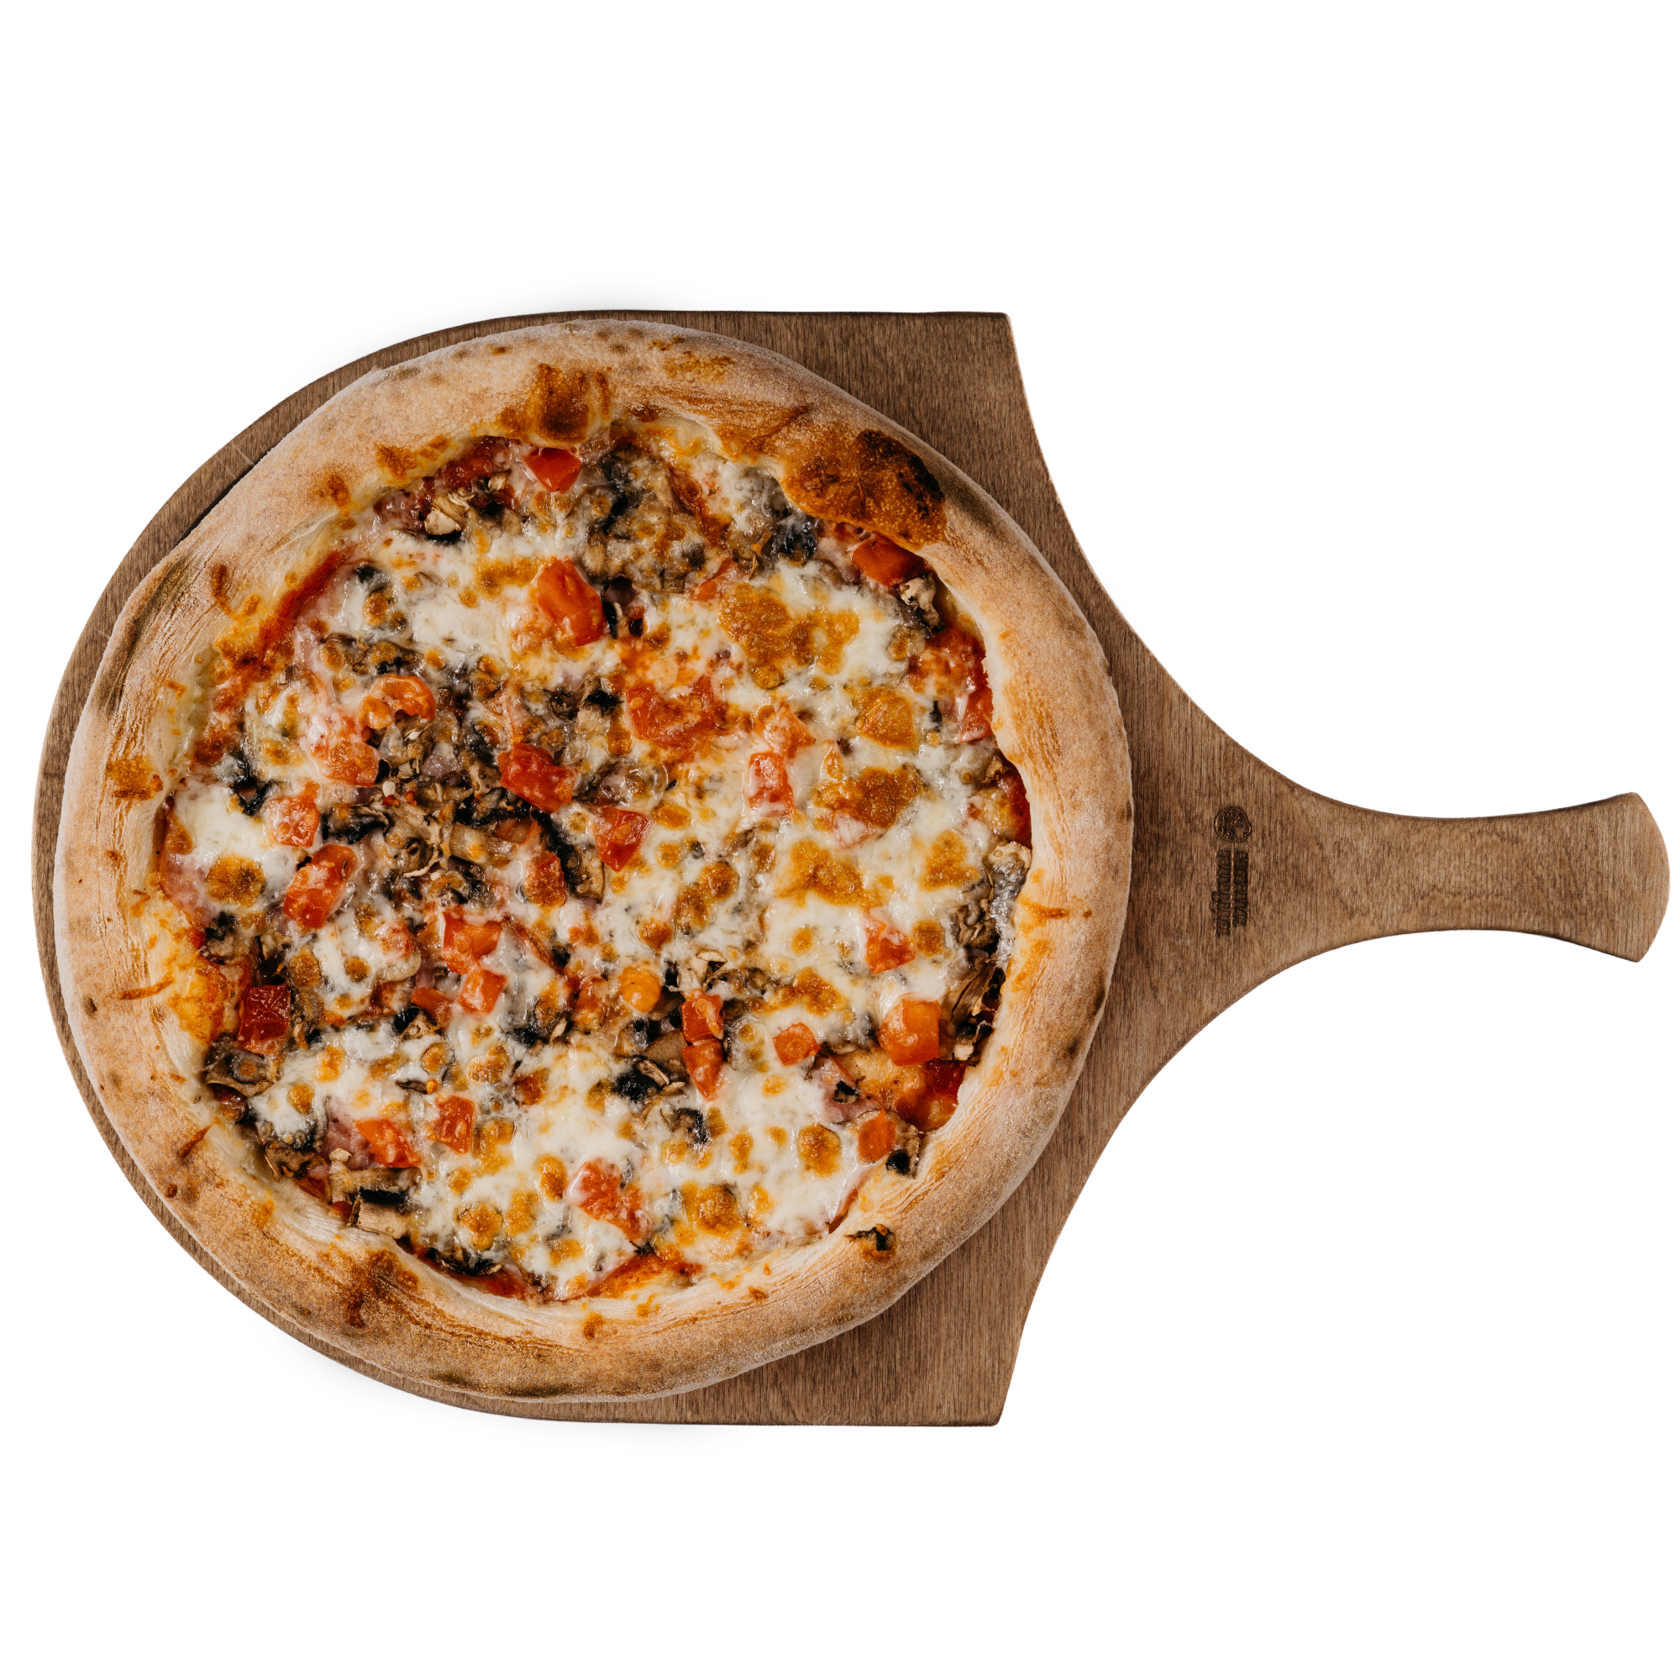 цезарь пицца замороженная с ветчиной и грибами отзывы фото 56